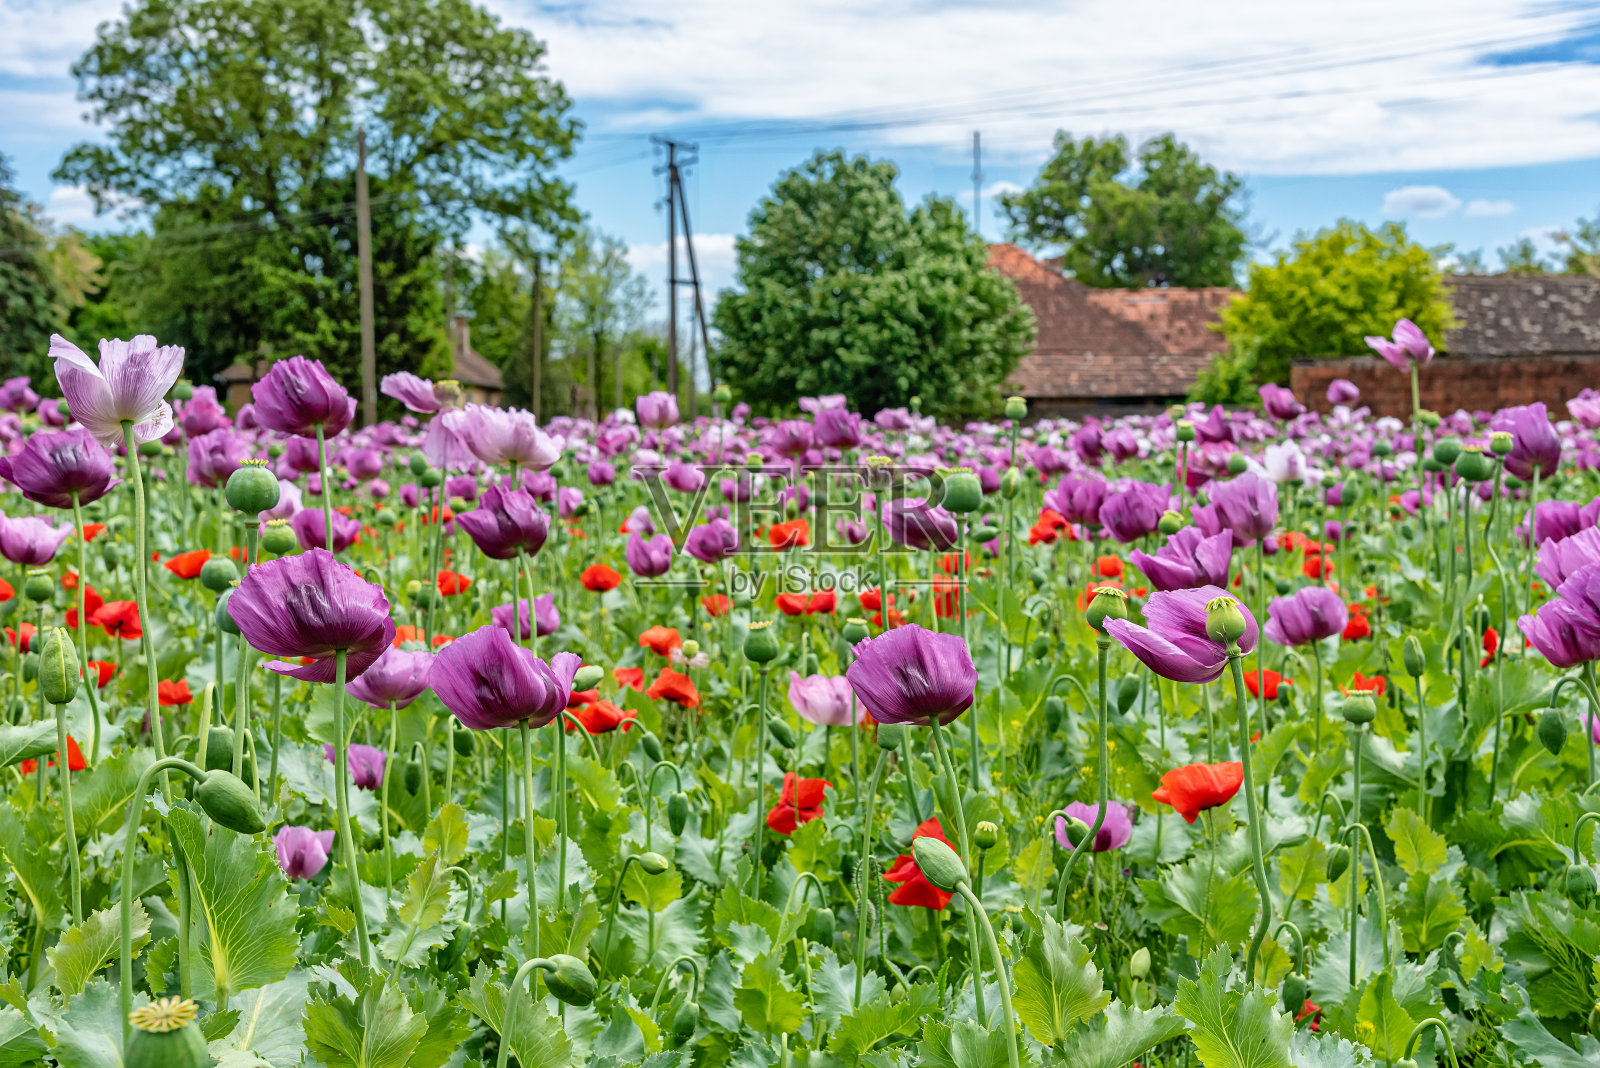 夏天的田野上开着鲜红和紫罗兰色的罂粟花。罂粟田照片摄影图片